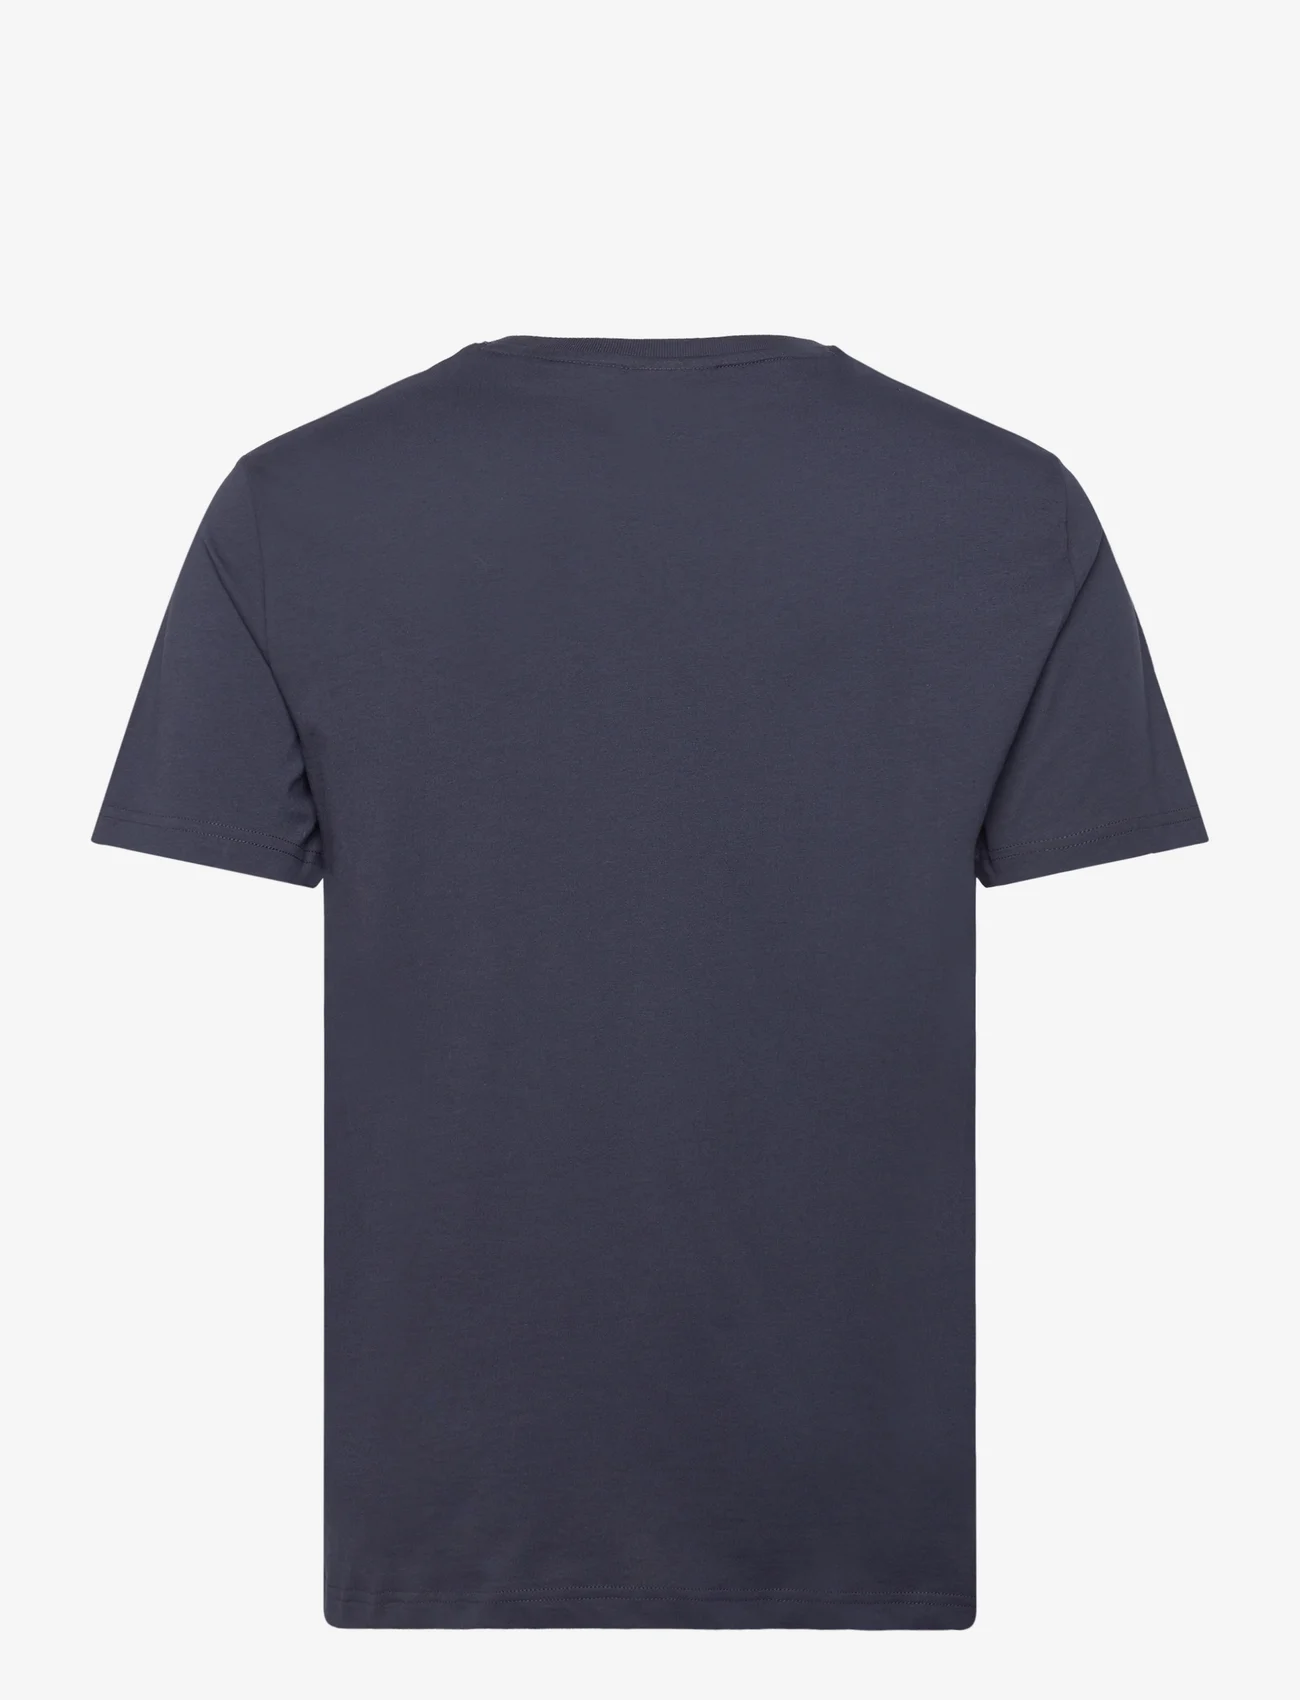 GANT - LOGO SS T-SHIRT - short-sleeved t-shirts - evening blue - 1